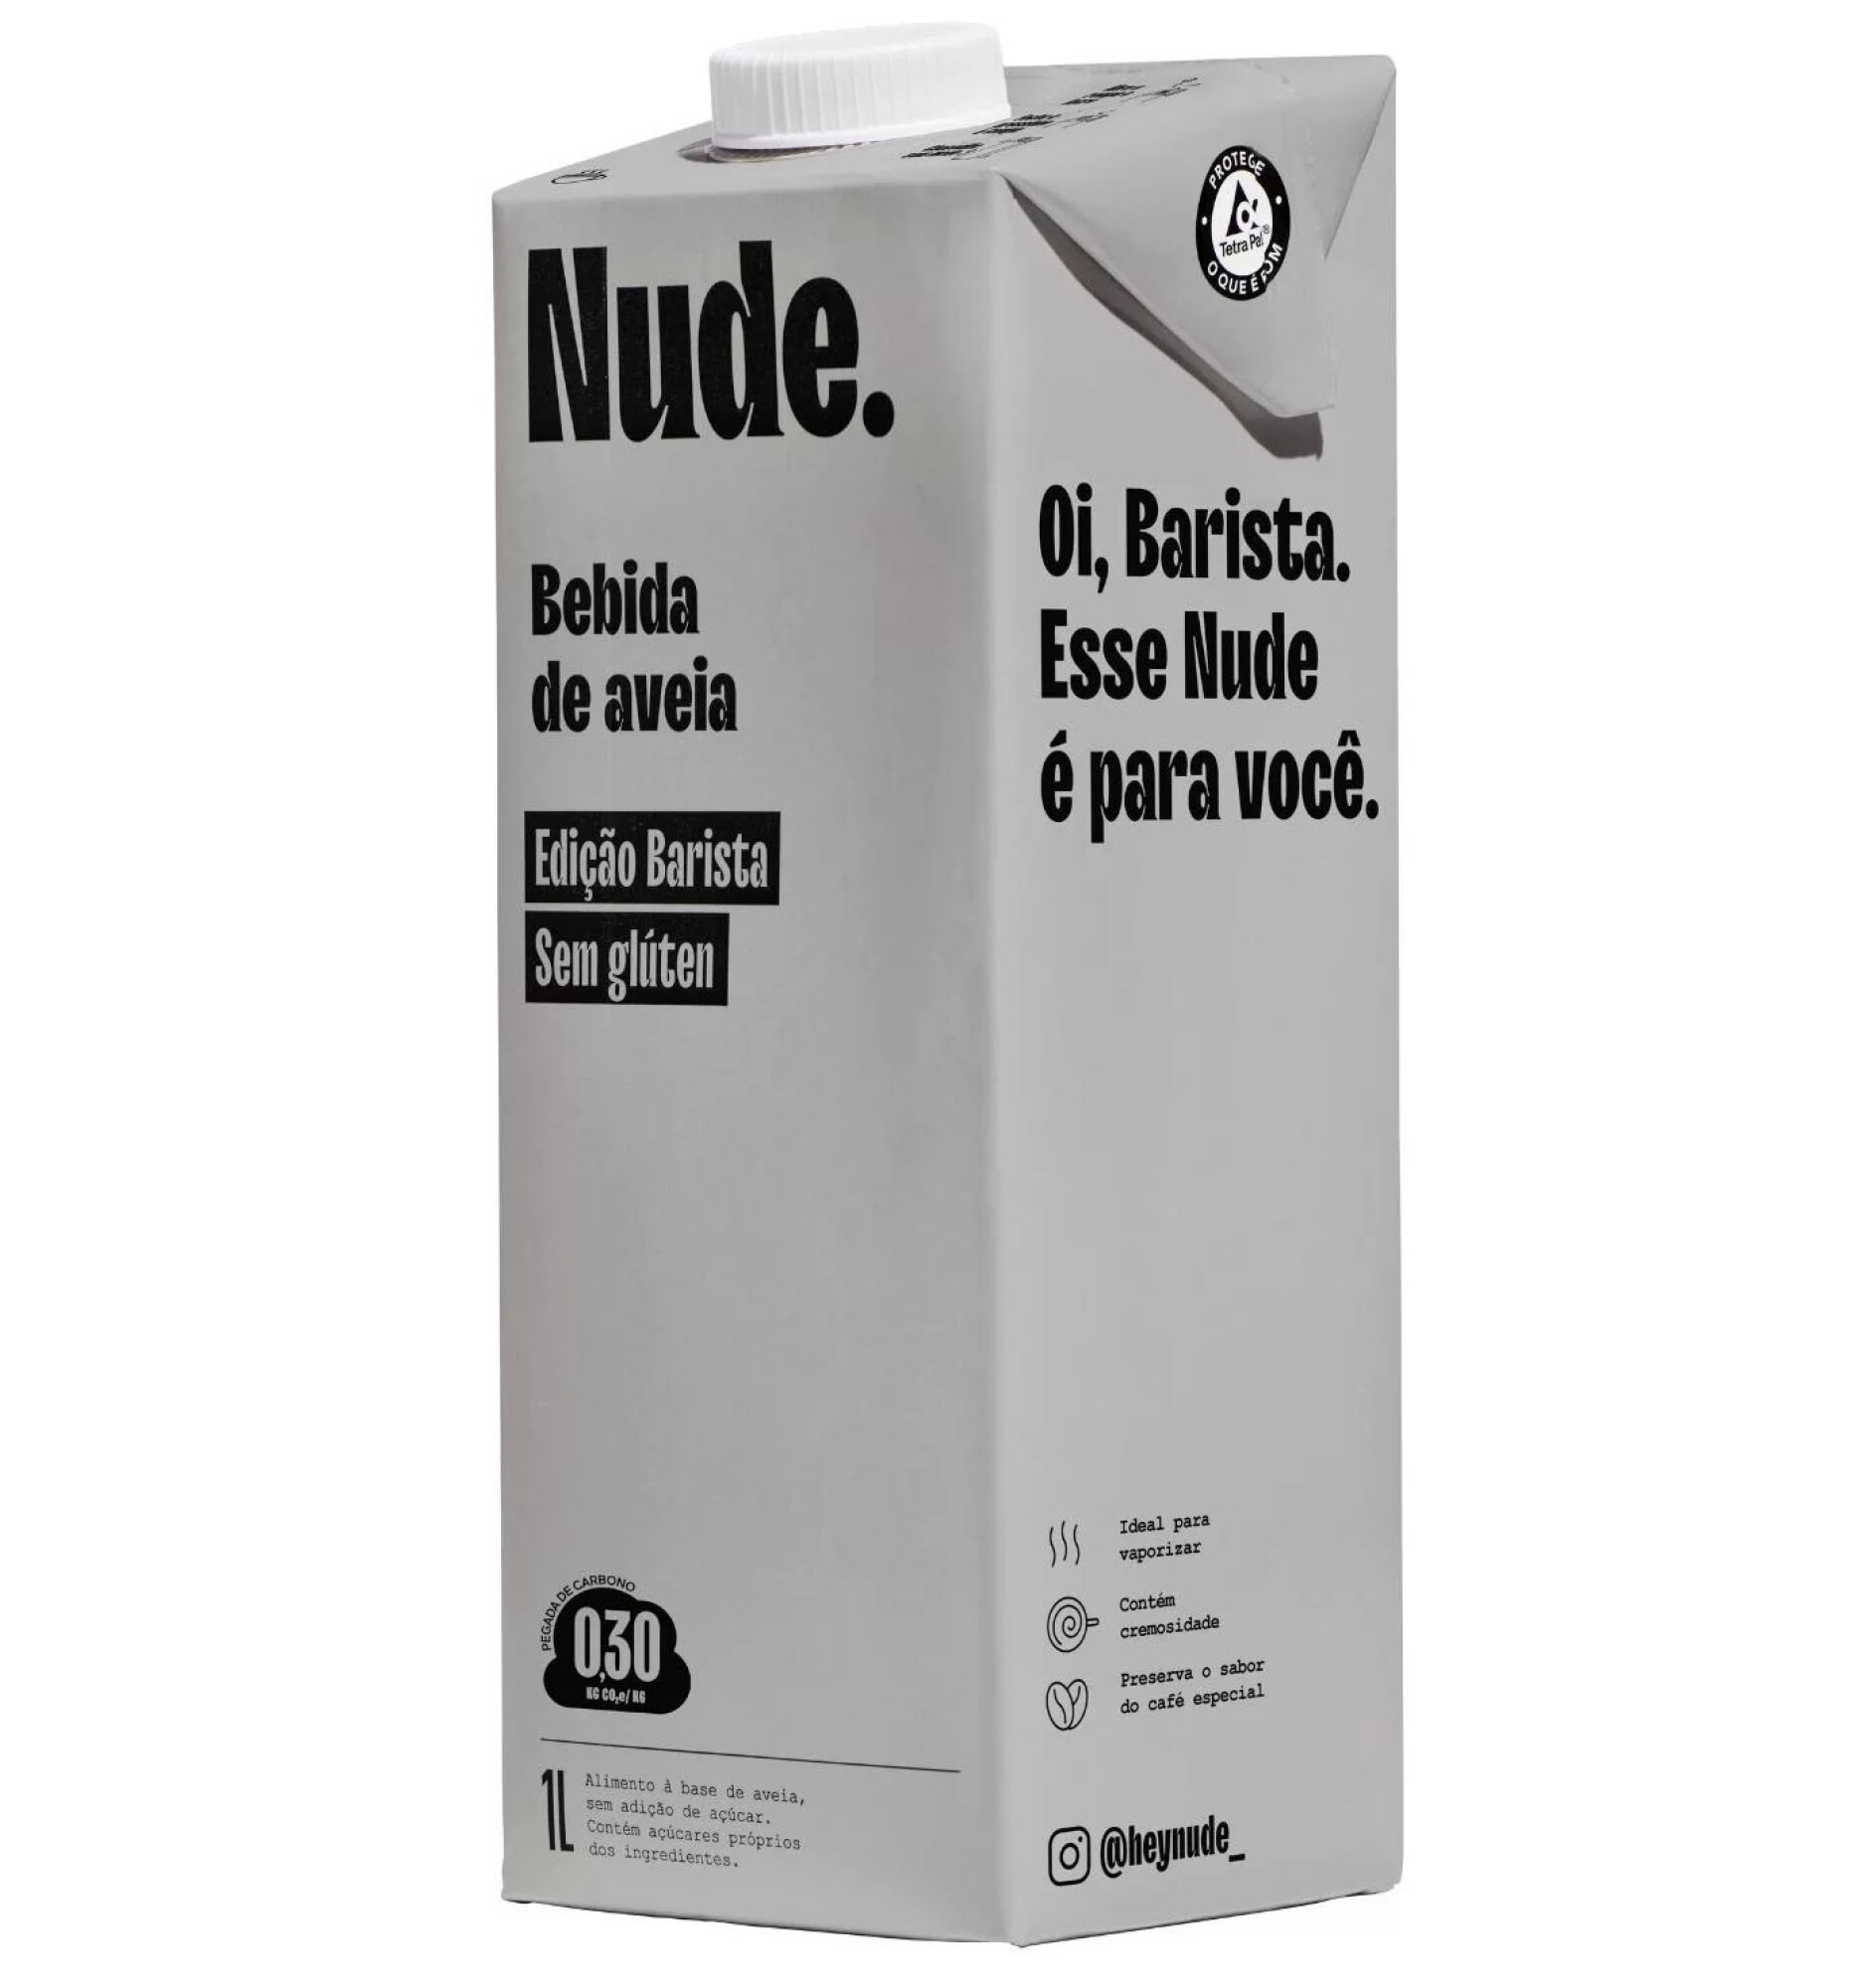 https://f.fcdn.app/imgs/87f431/www.lamolienda.uy/moliuy/4af5/original/catalogo/168770_168770_1/2000-2000/leches-avena-barista-sin-gluten-nude-1l-leches-avena-barista-sin-gluten-nude-1l.jpg